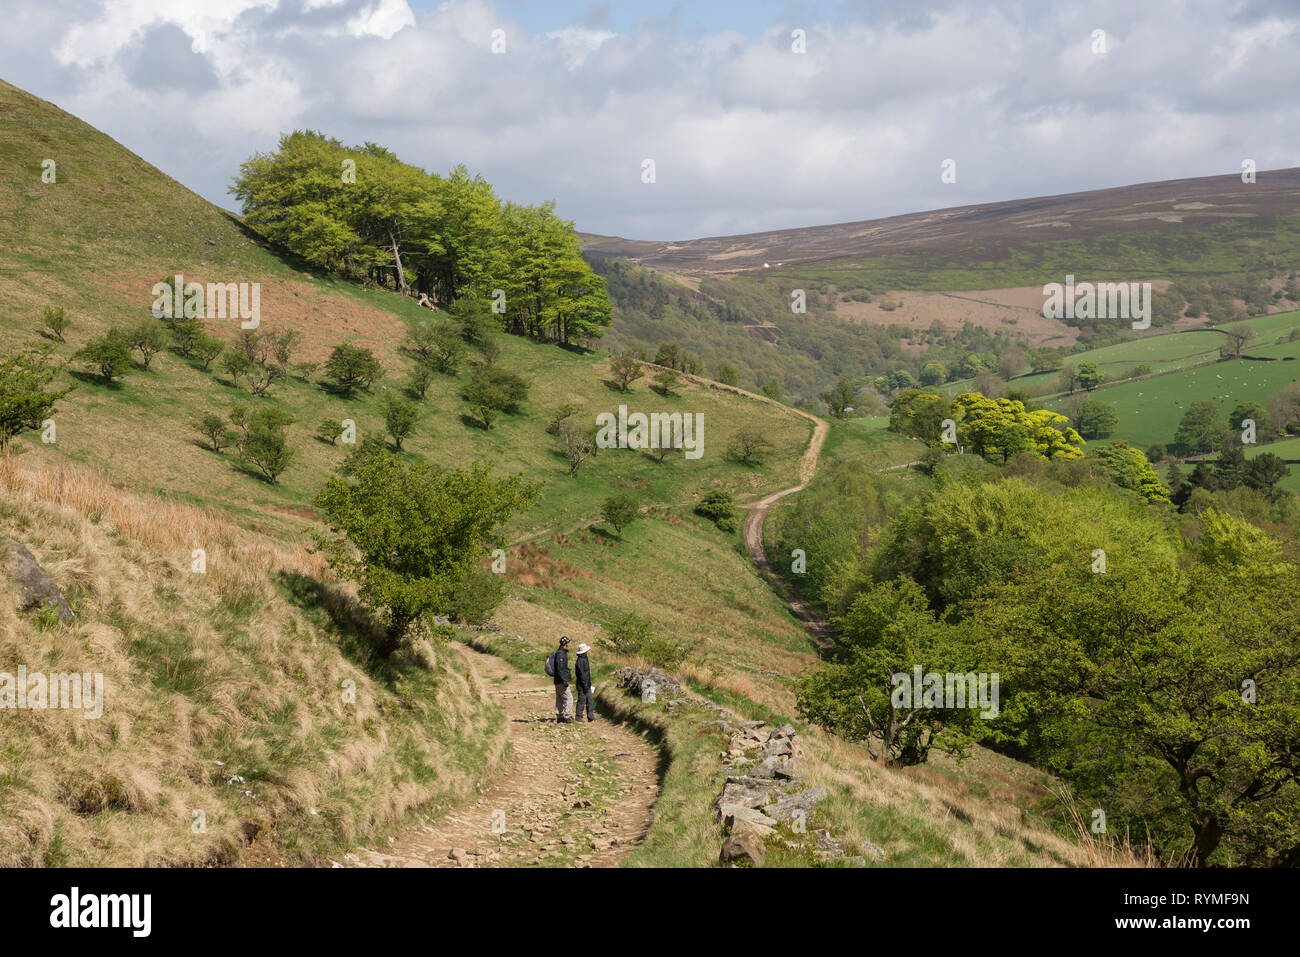 Matura in piedi per ammirare la vista delle colline nei pressi di Hayfield nel parco nazionale di Peak District, Derbyshire, in Inghilterra. Una soleggiata giornata di primavera. Foto Stock